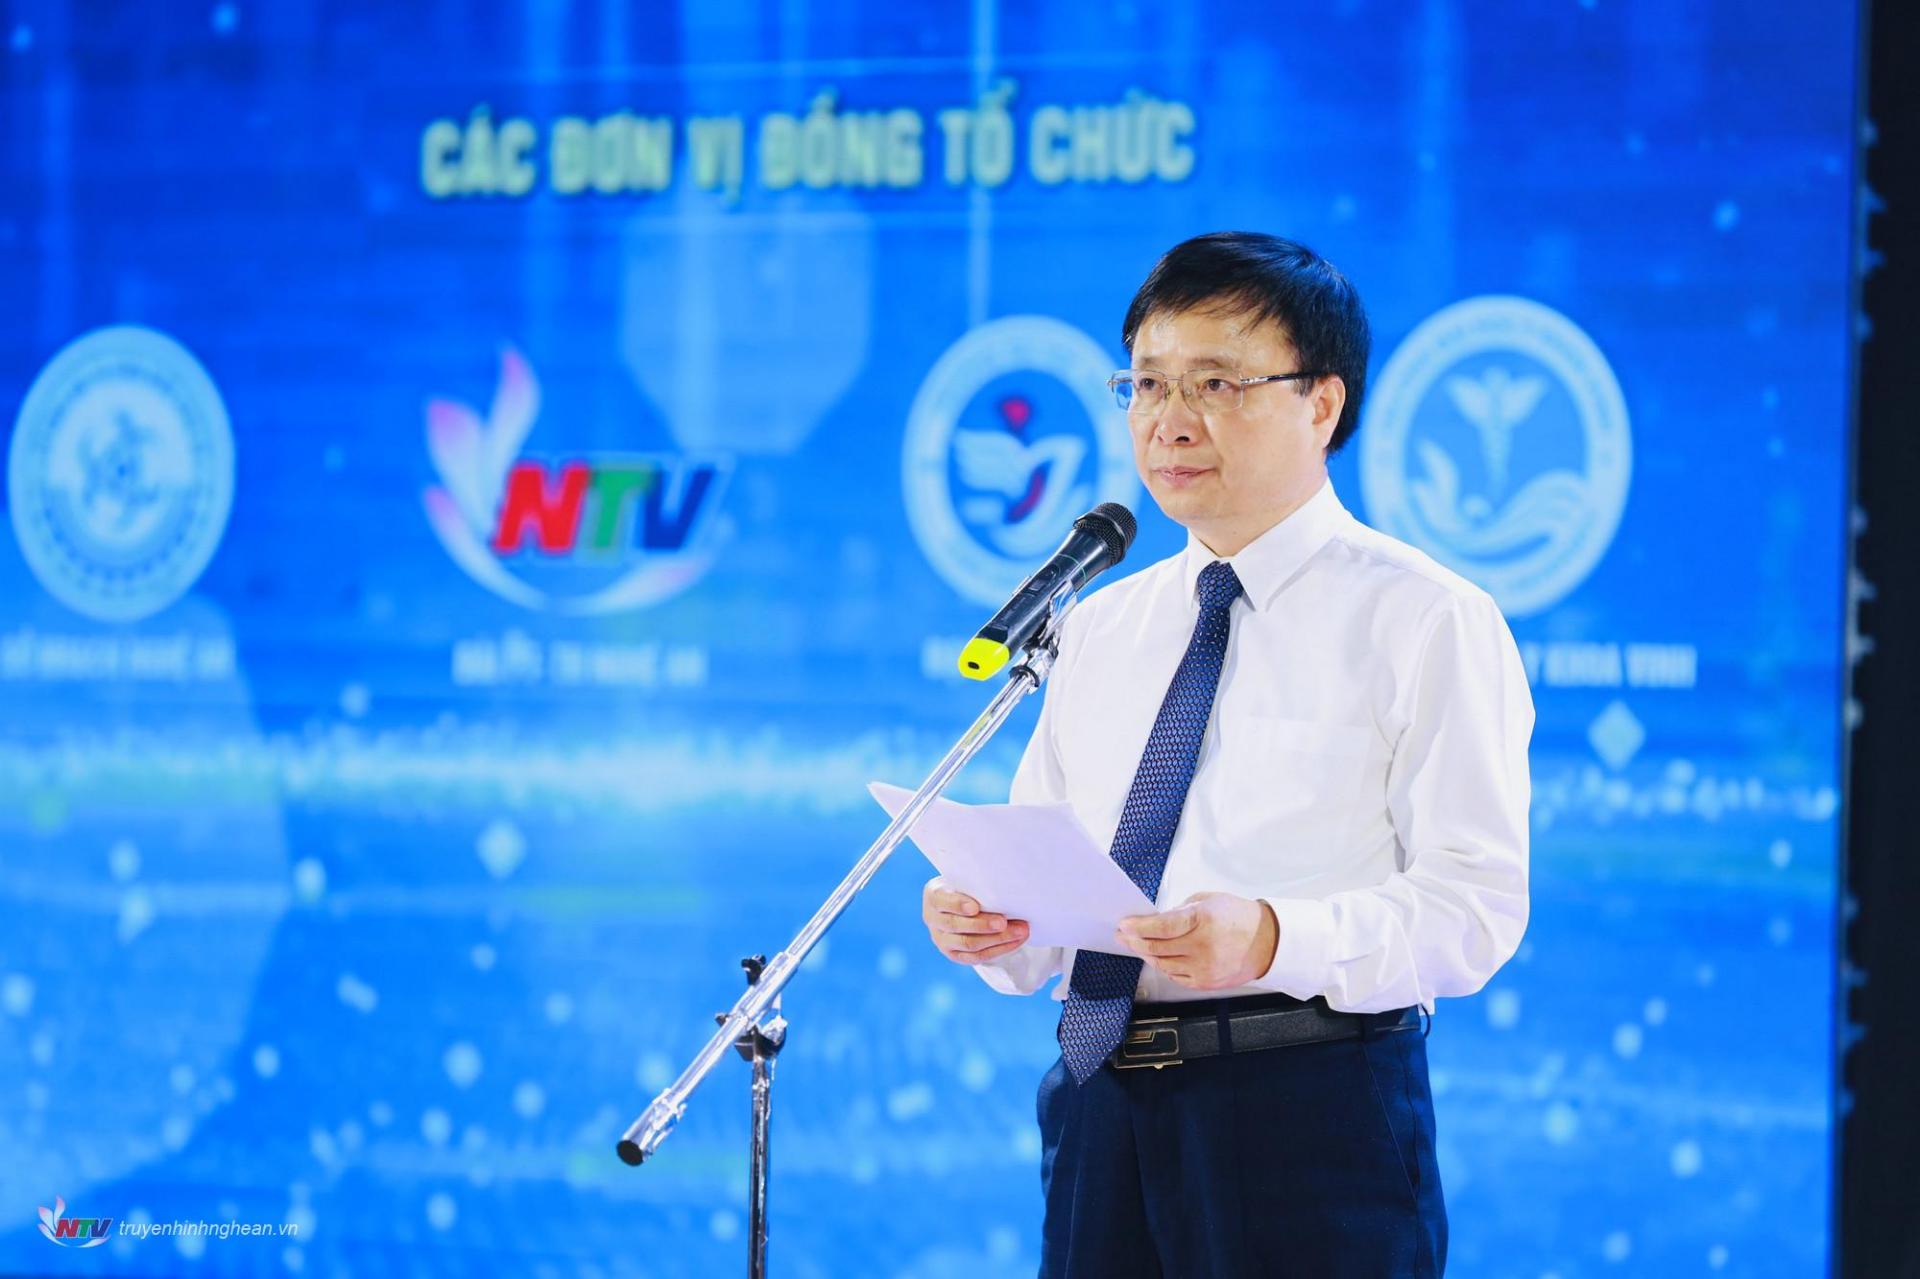 Phó Chủ tịch UBND tỉnh Nghệ An Bùi Đình Long phát động Giải Sáng tạo khoa học và công nghệ và khởi nghiệp đổi mới sáng tạo Nghệ An, giai đoạn 2023 - 2026.